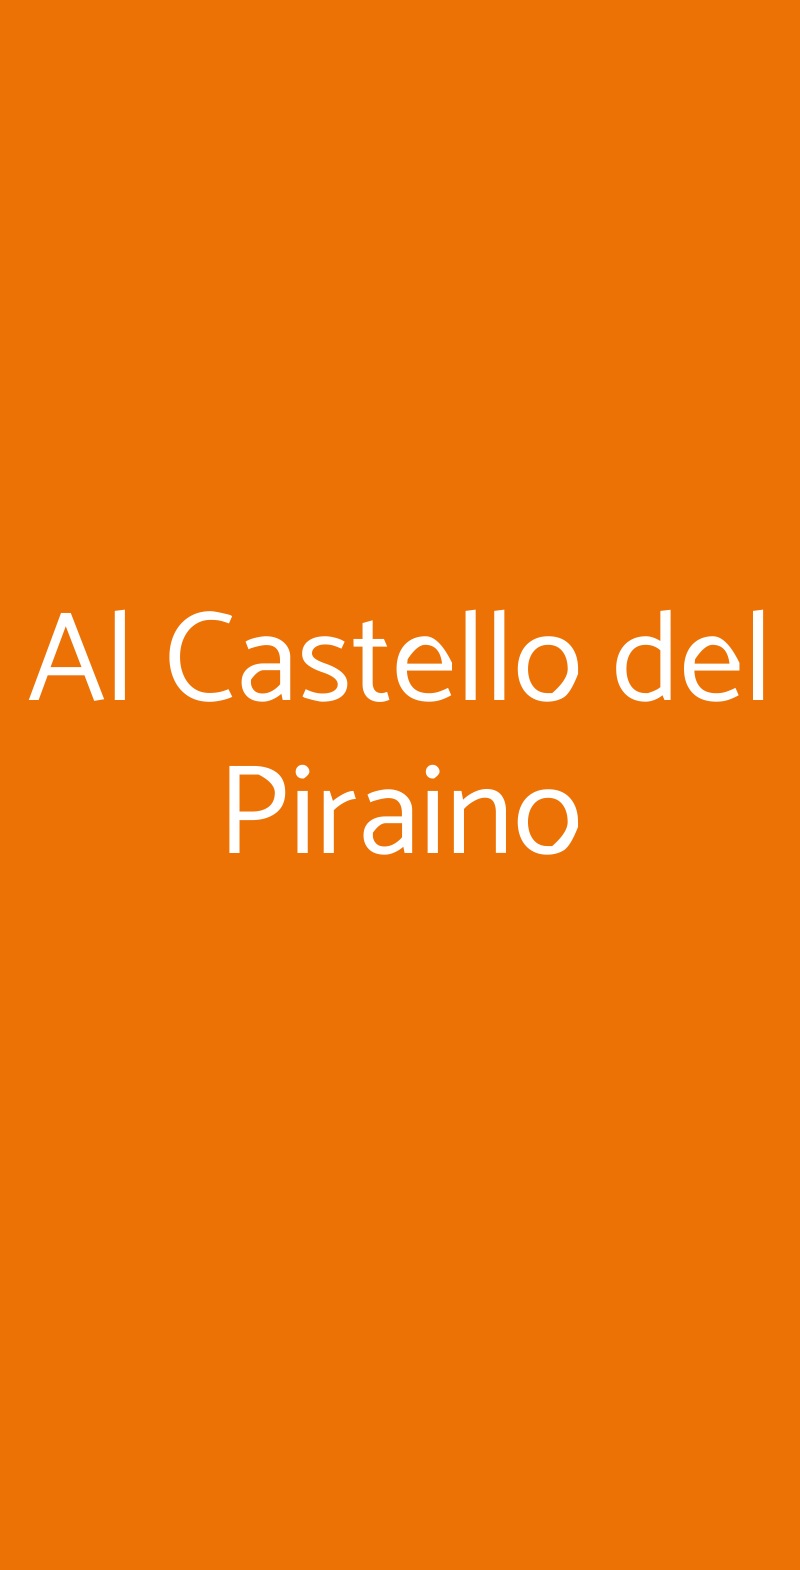 Al Castello del Piraino Santa Caterina Villarmosa menù 1 pagina